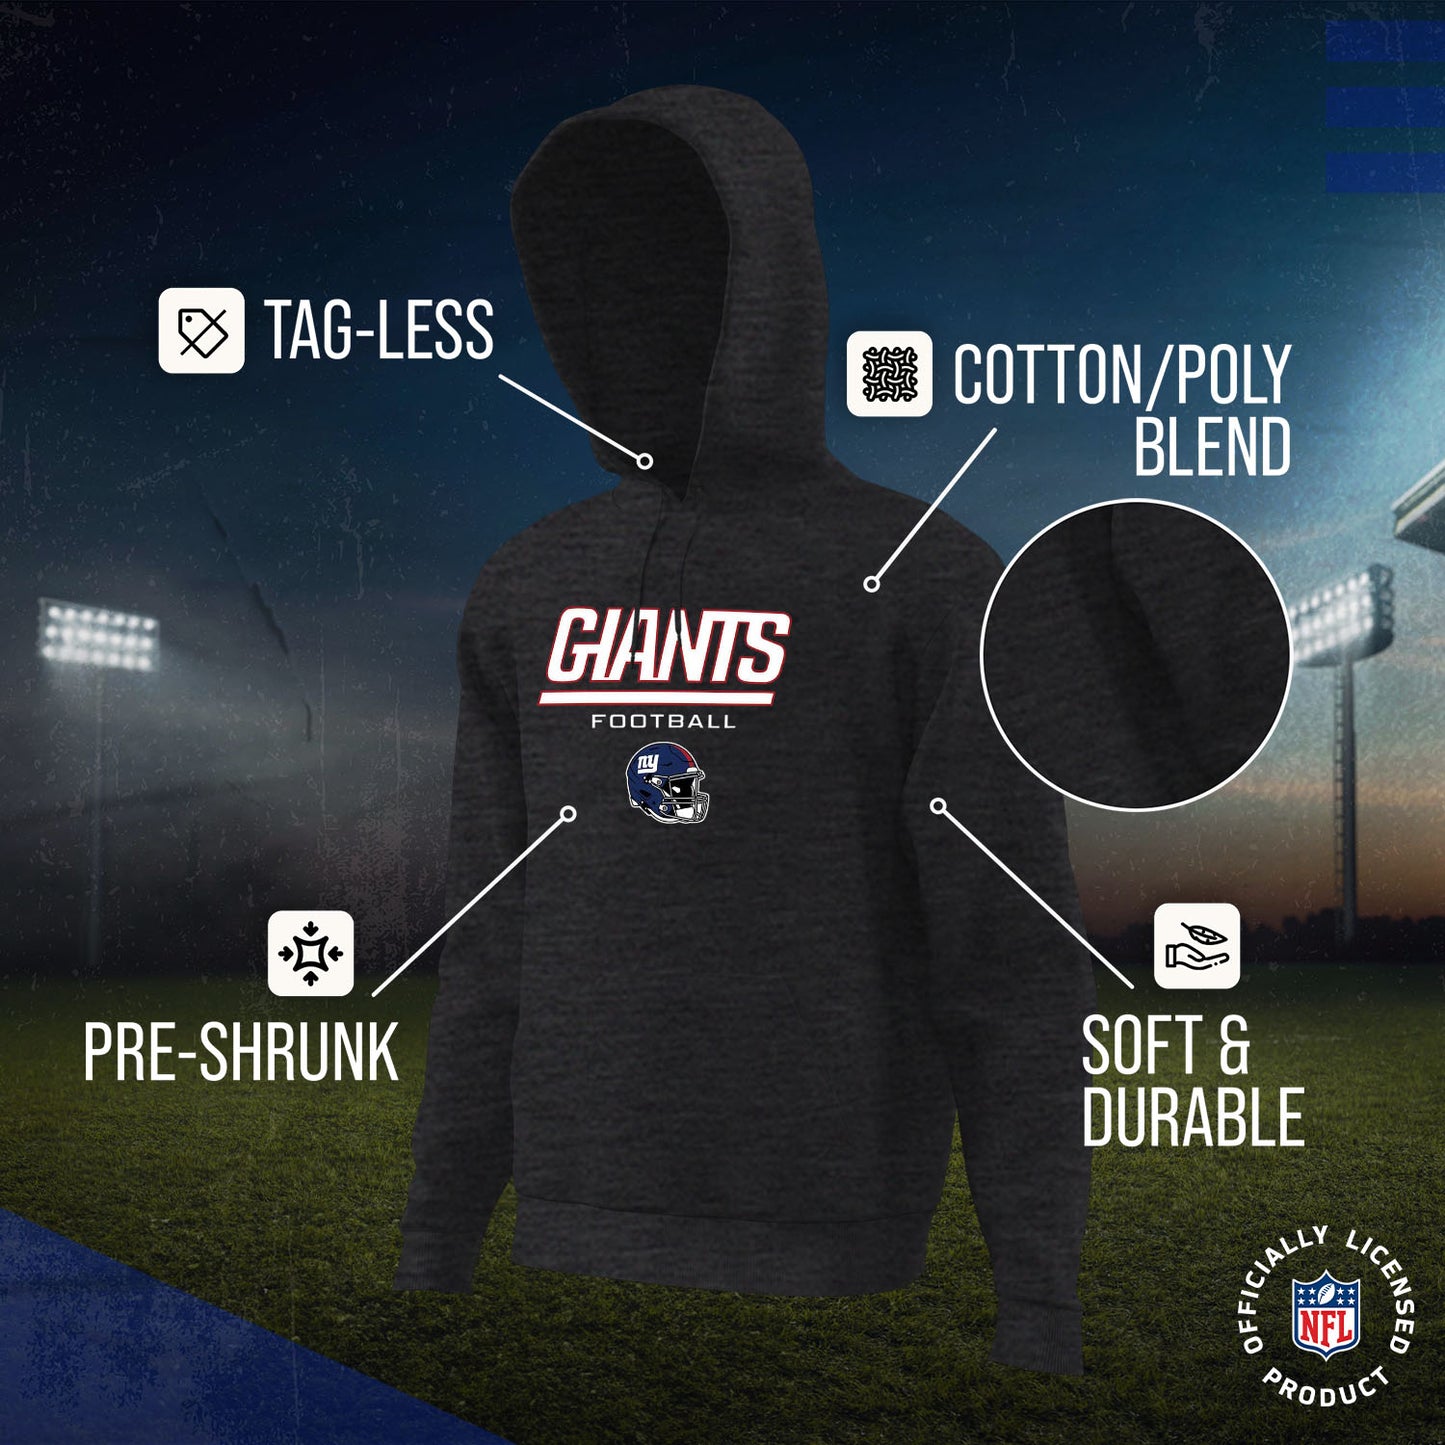 New York Giants Adult NFL Football Helmet Heather Hooded Sweatshirt  - Charcoal